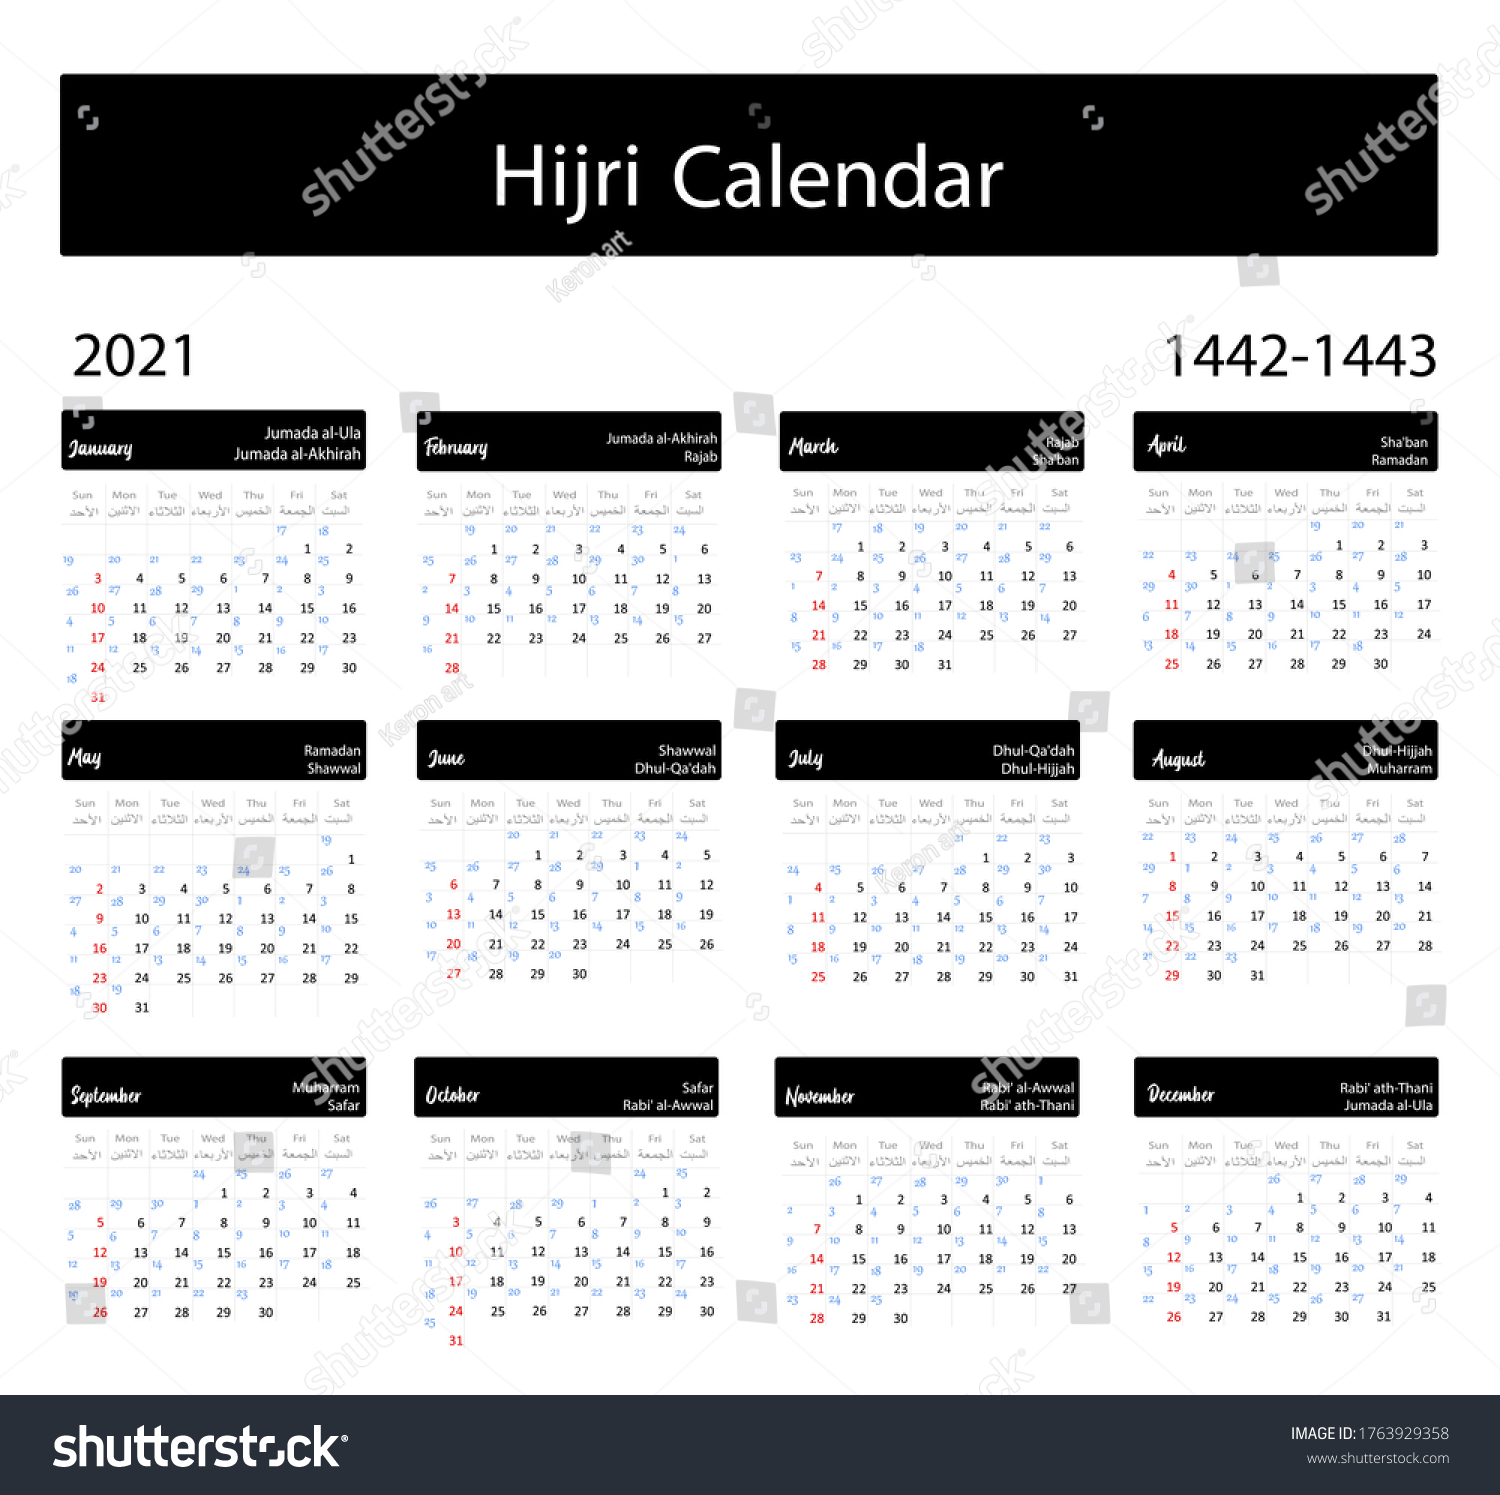 Islamic calendar